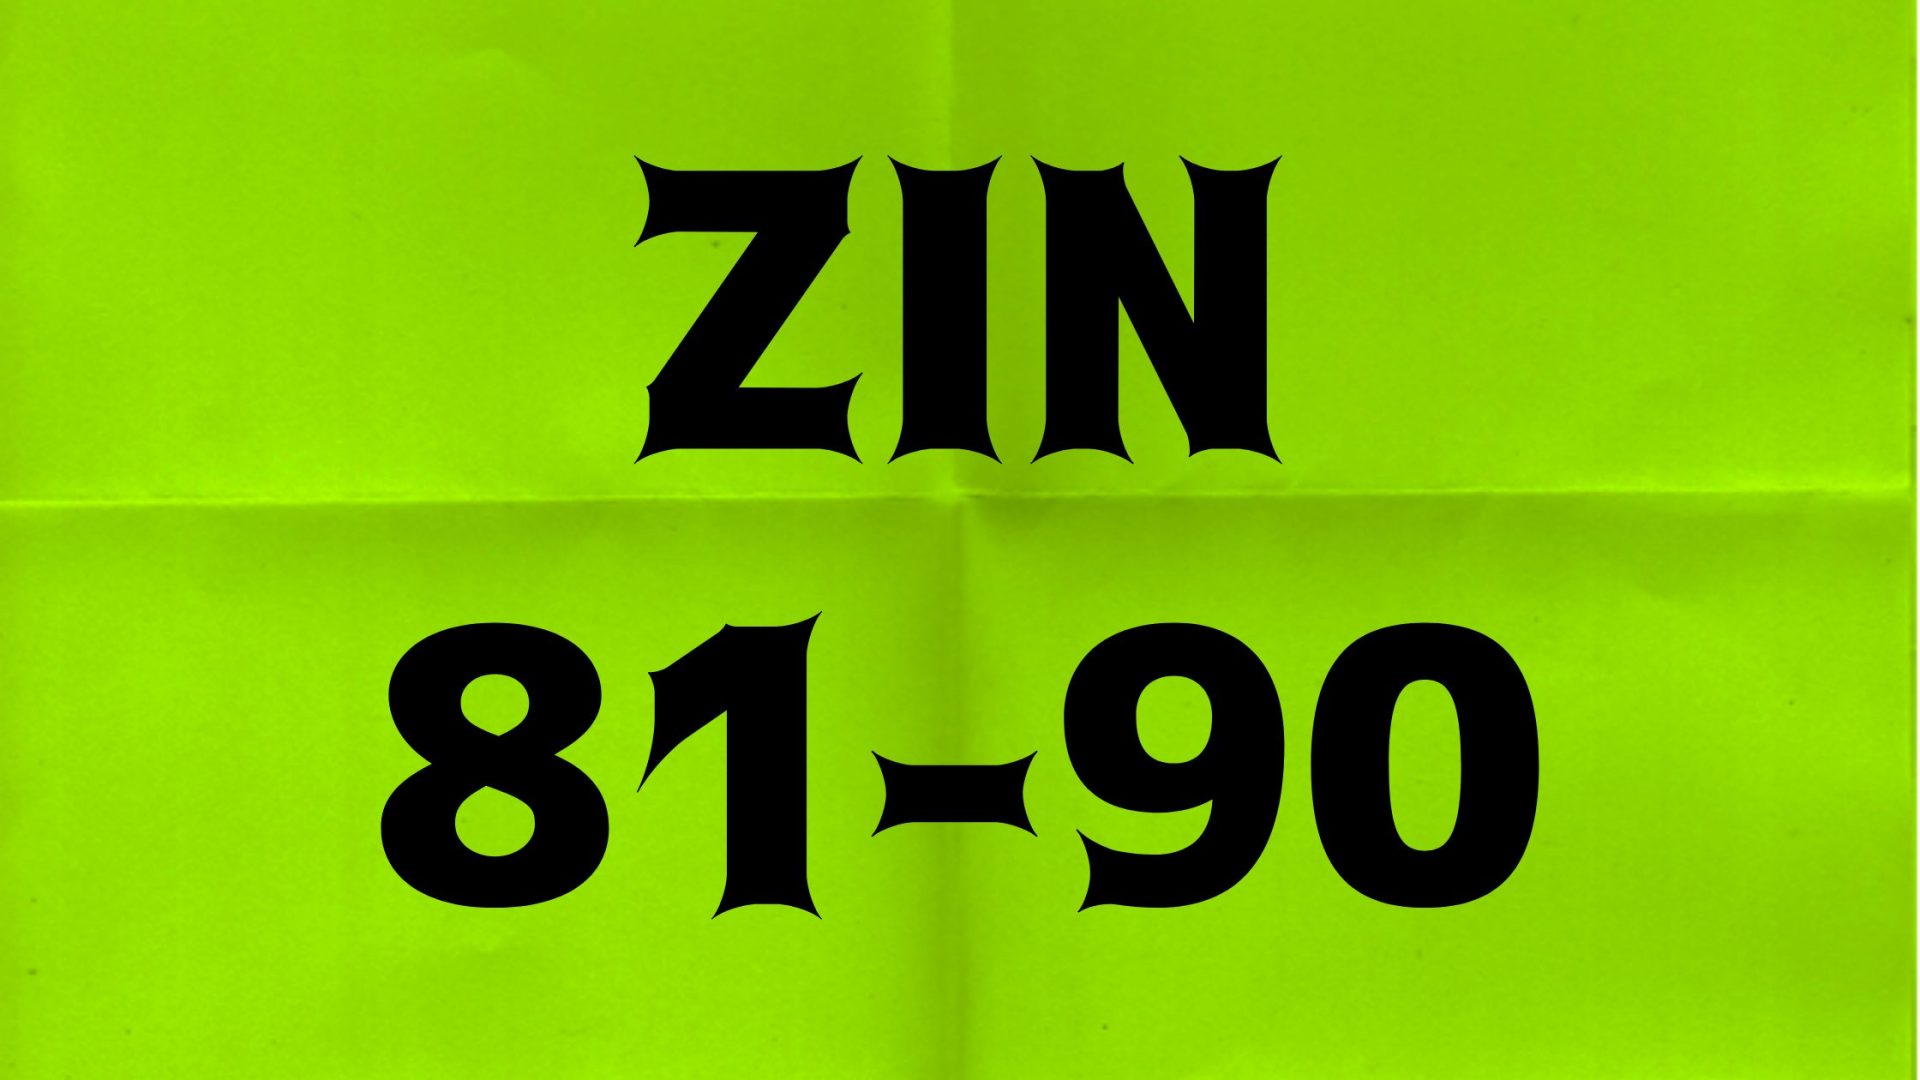 ZIN 81-90